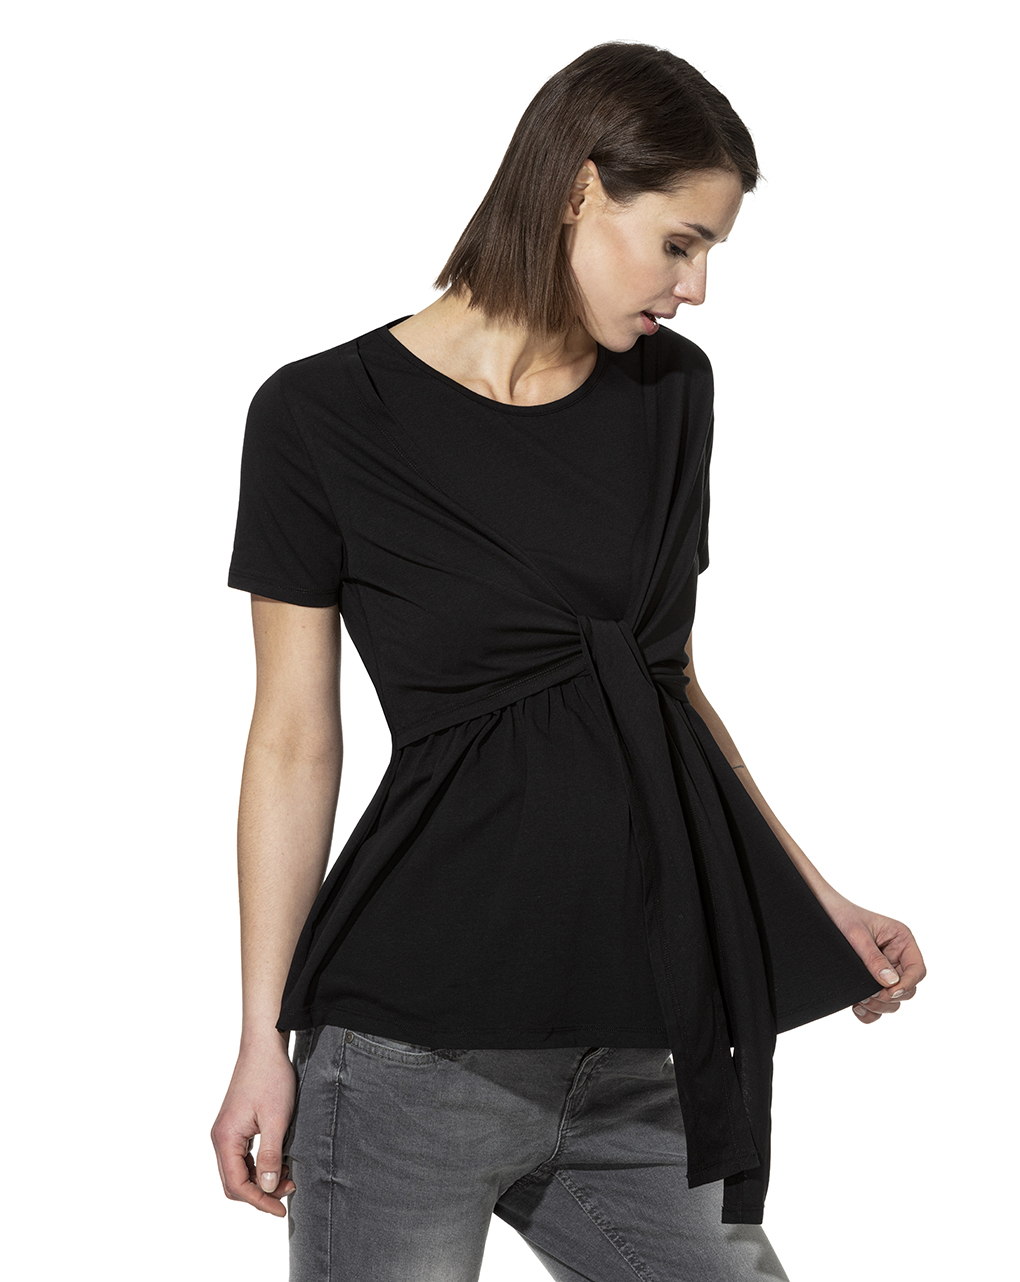 γυναικείο t-shirt εγκυμοσύνης / θηλασμού μαύρο με δέσιμο - Prénatal